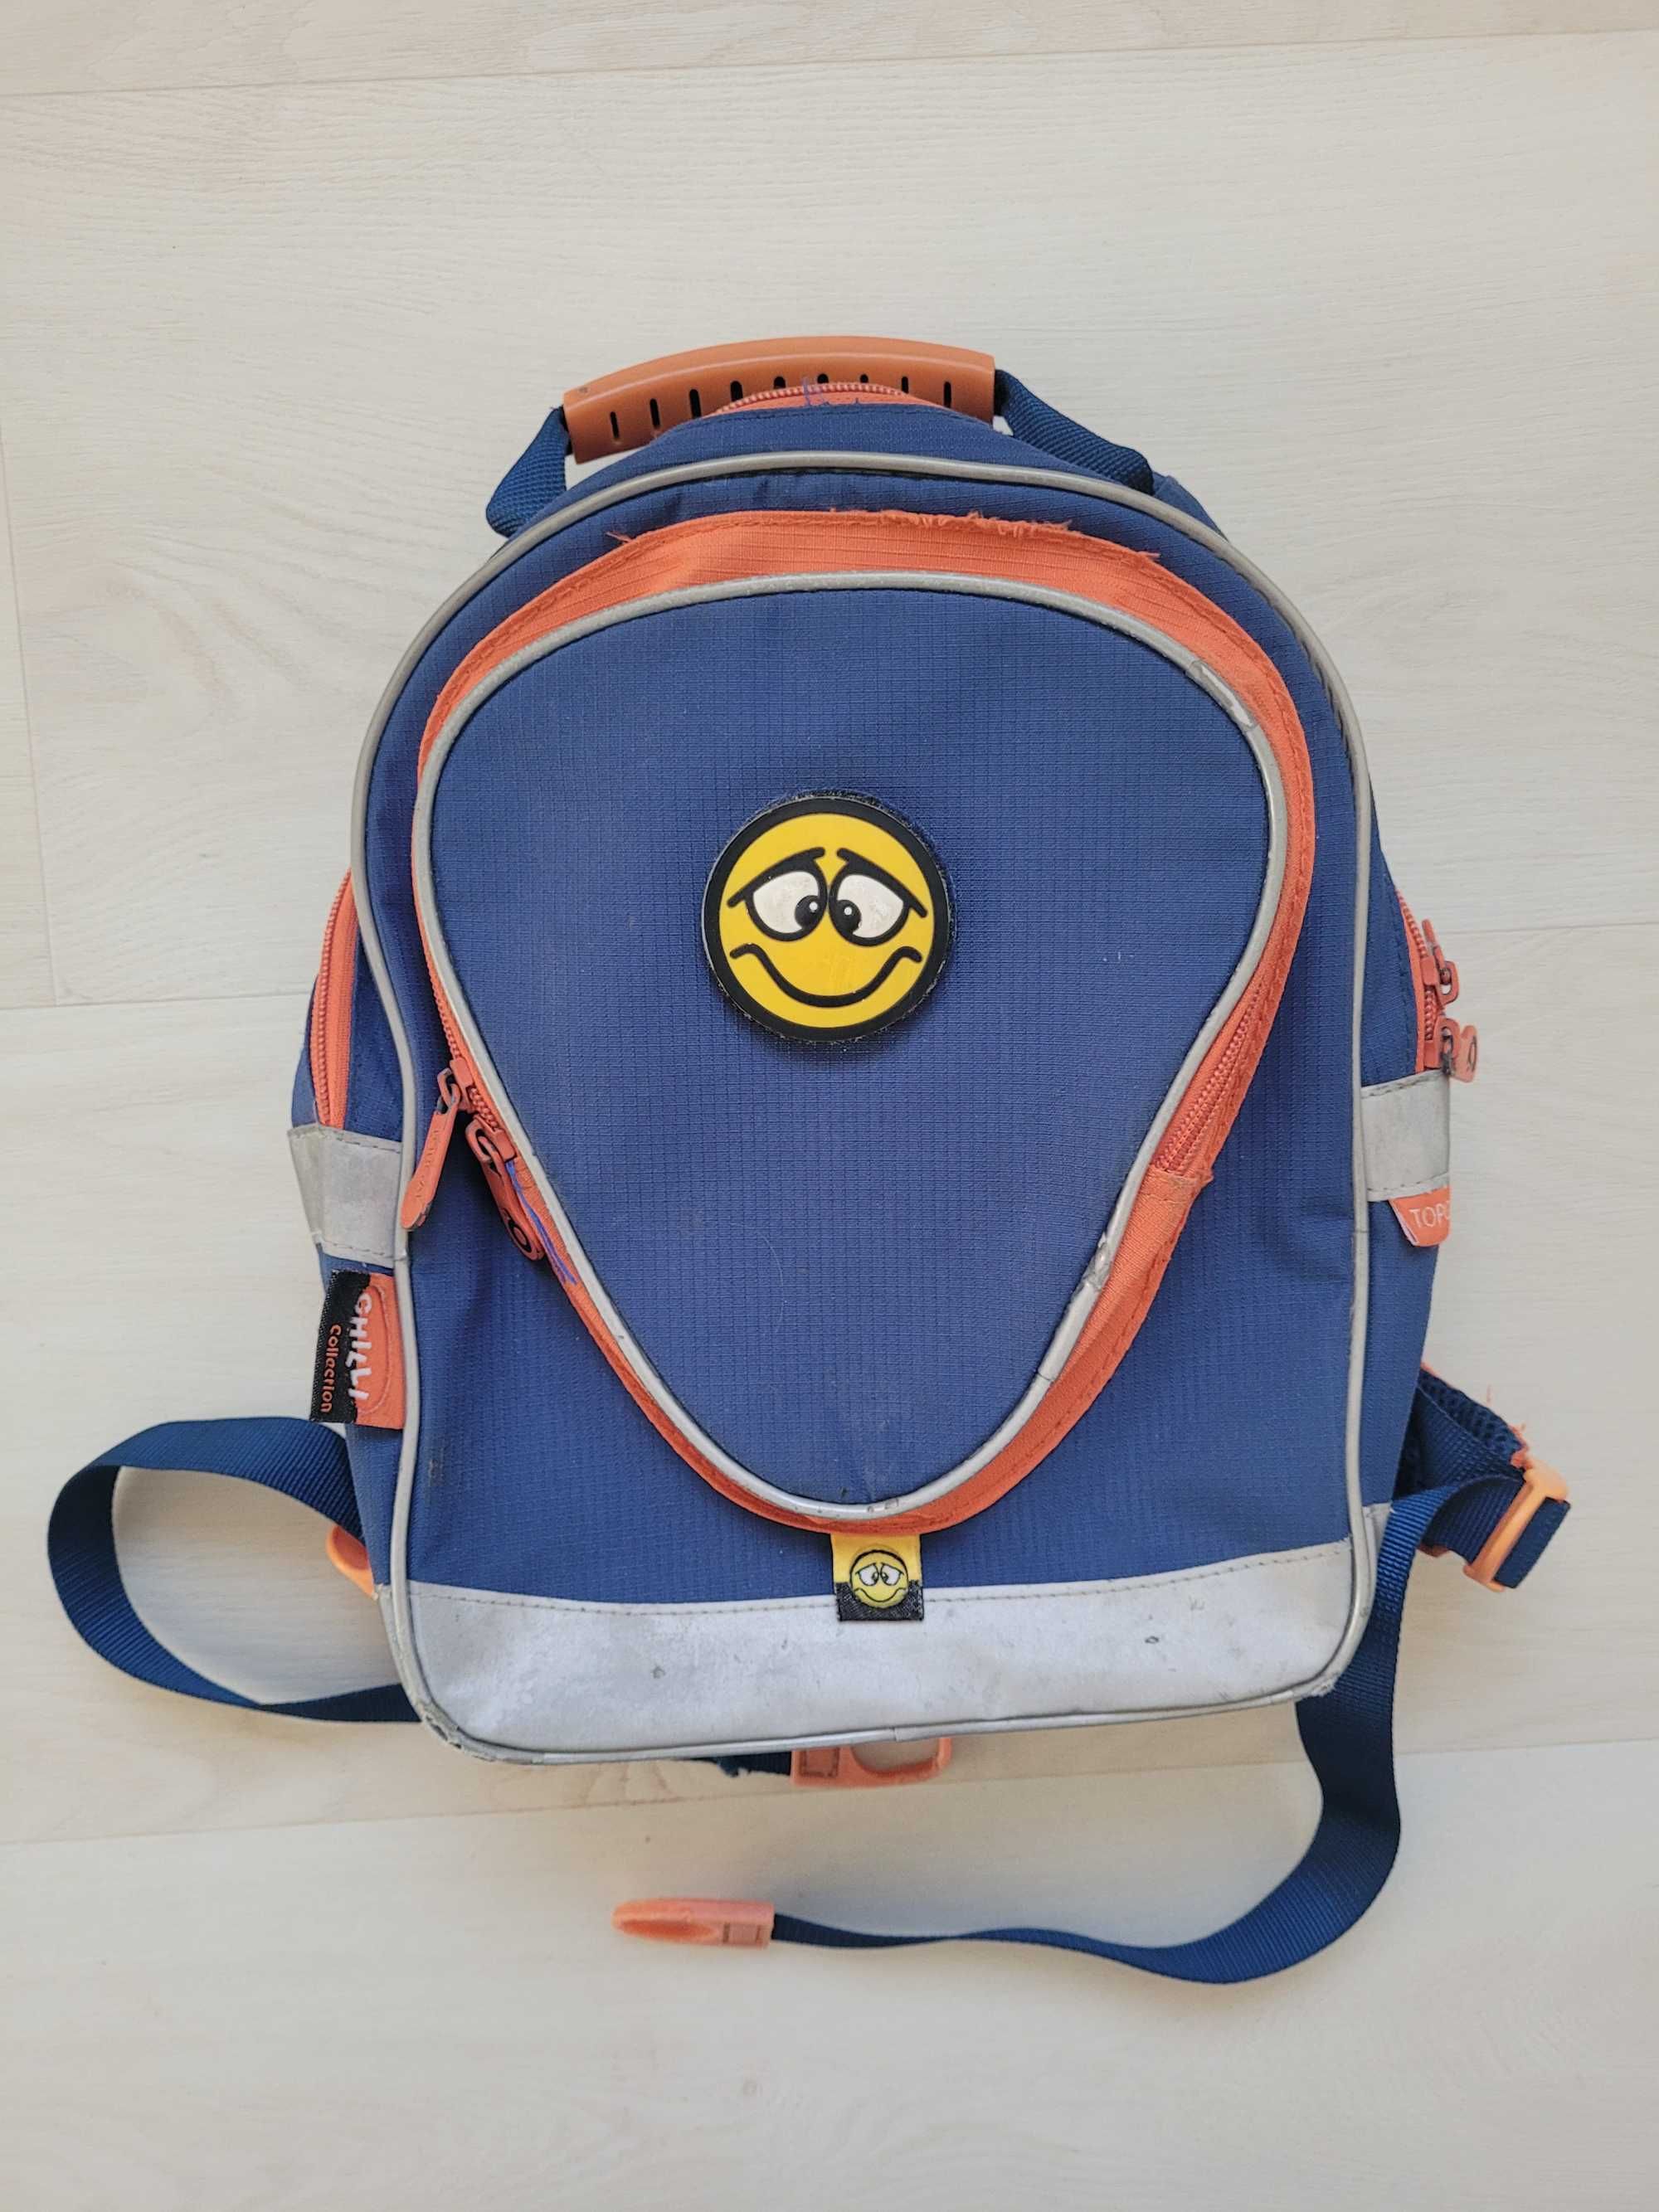 plecak plecaczek dla przedszkolaka 3 lata+ TOPGAL wymienne buźki